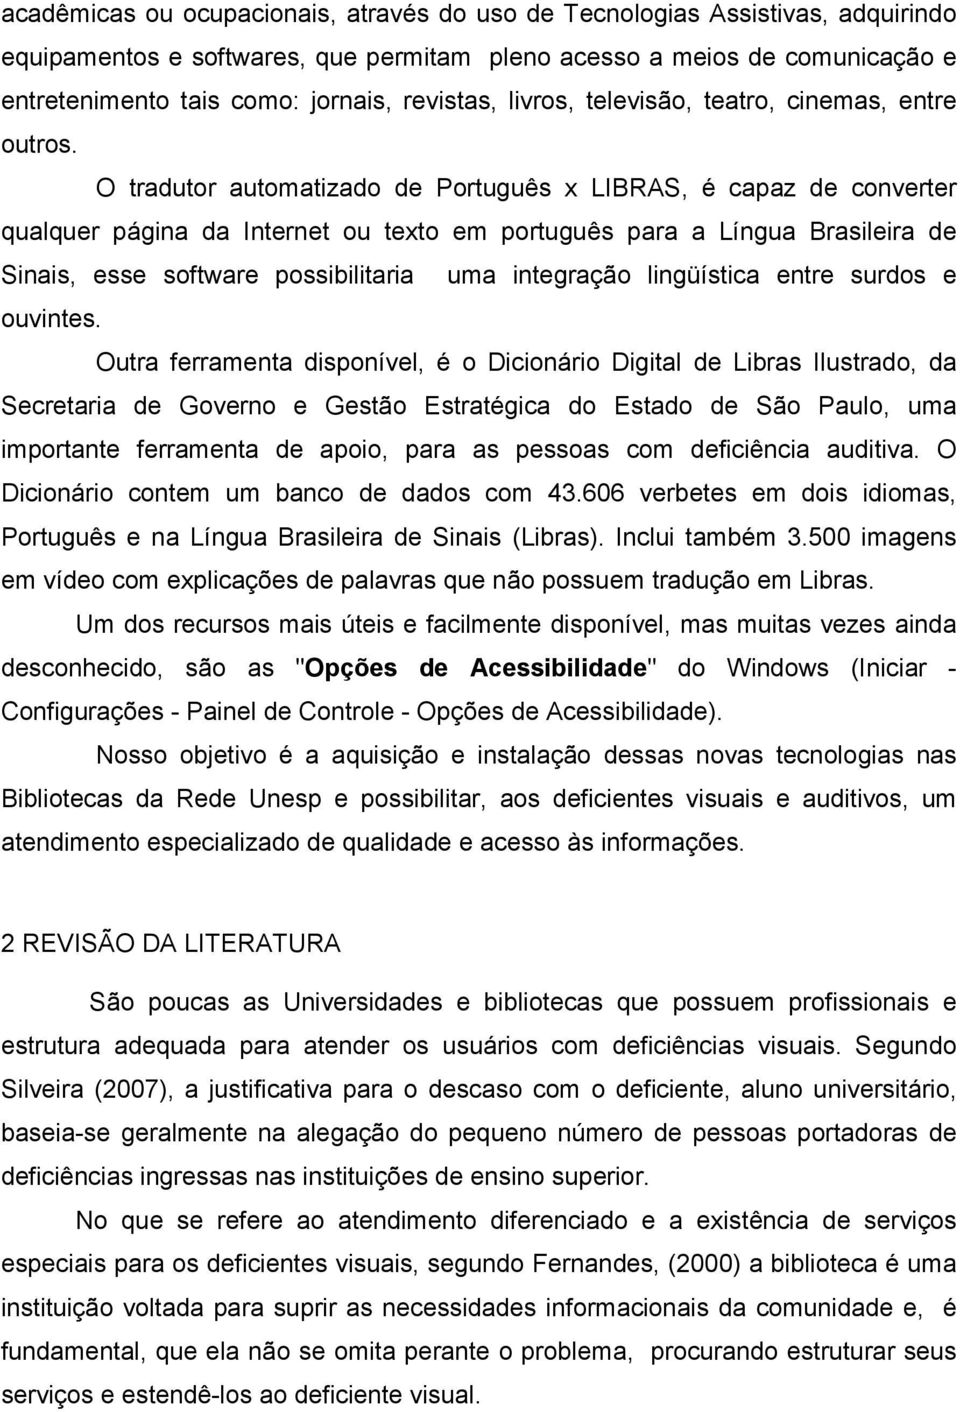 O tradutor automatizado de Português x LIBRAS, é capaz de converter qualquer página da Internet ou texto em português para a Língua Brasileira de Sinais, esse software possibilitaria uma integração